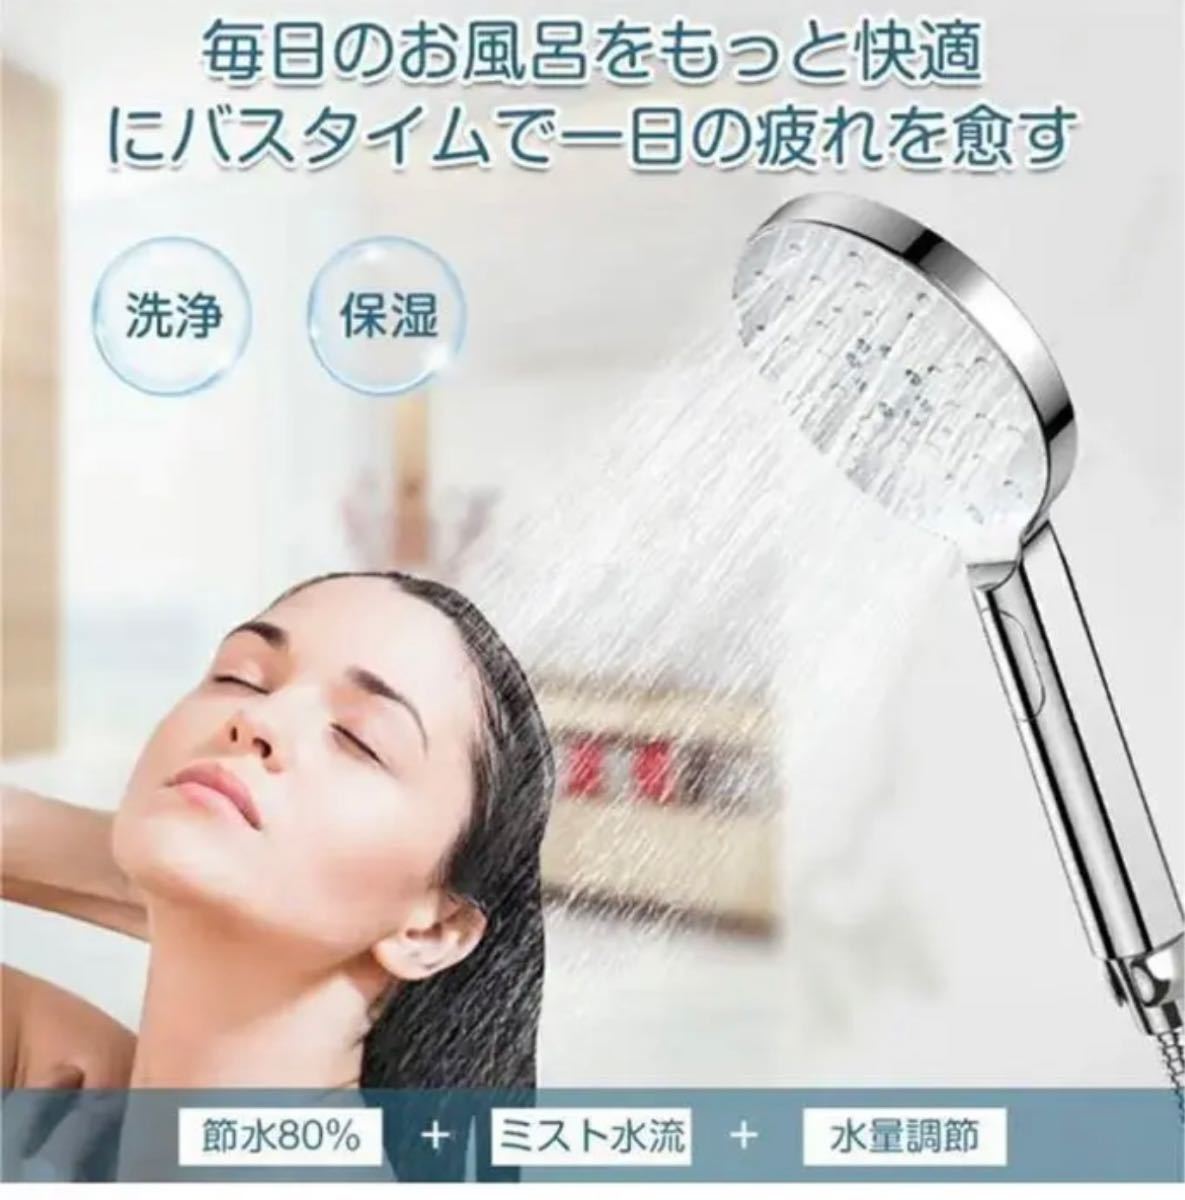 シャワーヘッド 80%節水 マイクロナノバブル